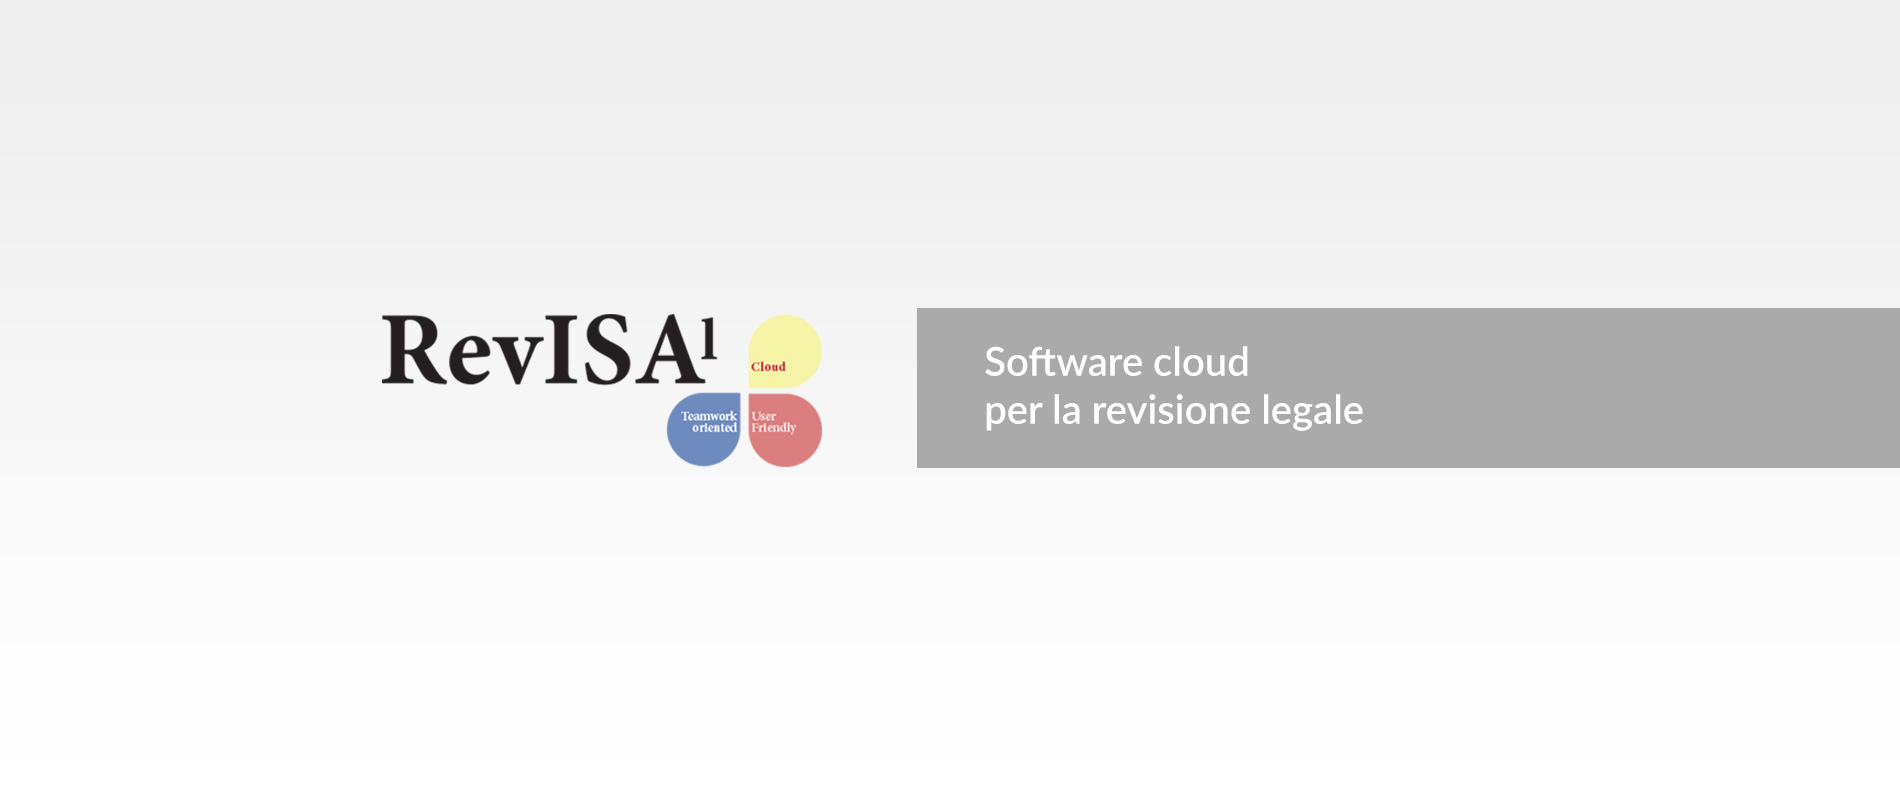 Revisal, il software cloud per la revisione legale